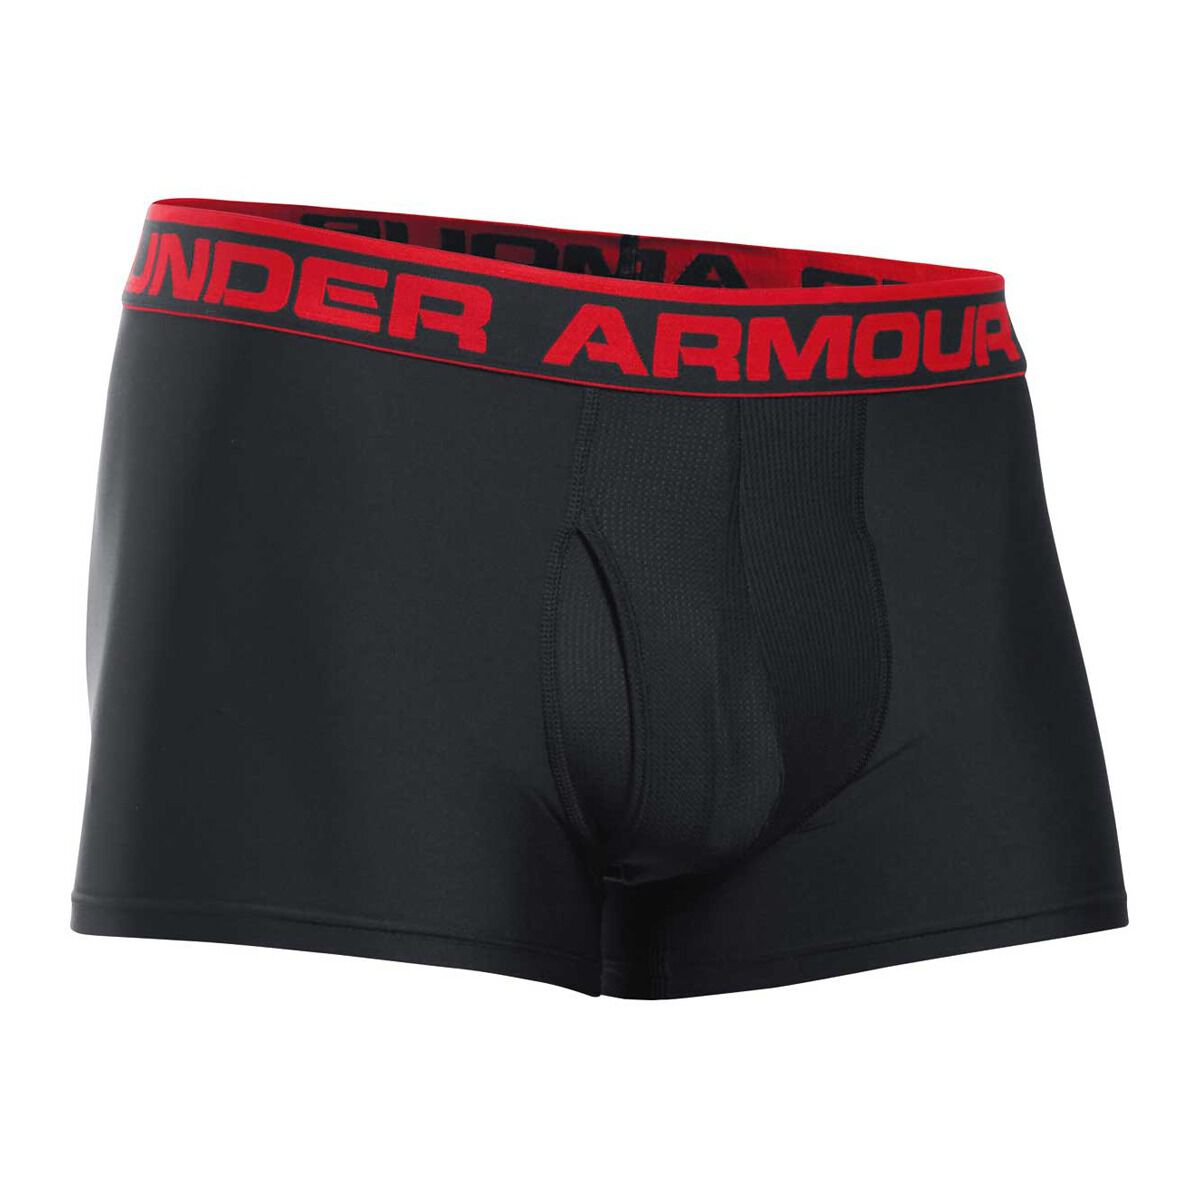 rebel sport under armour underwear